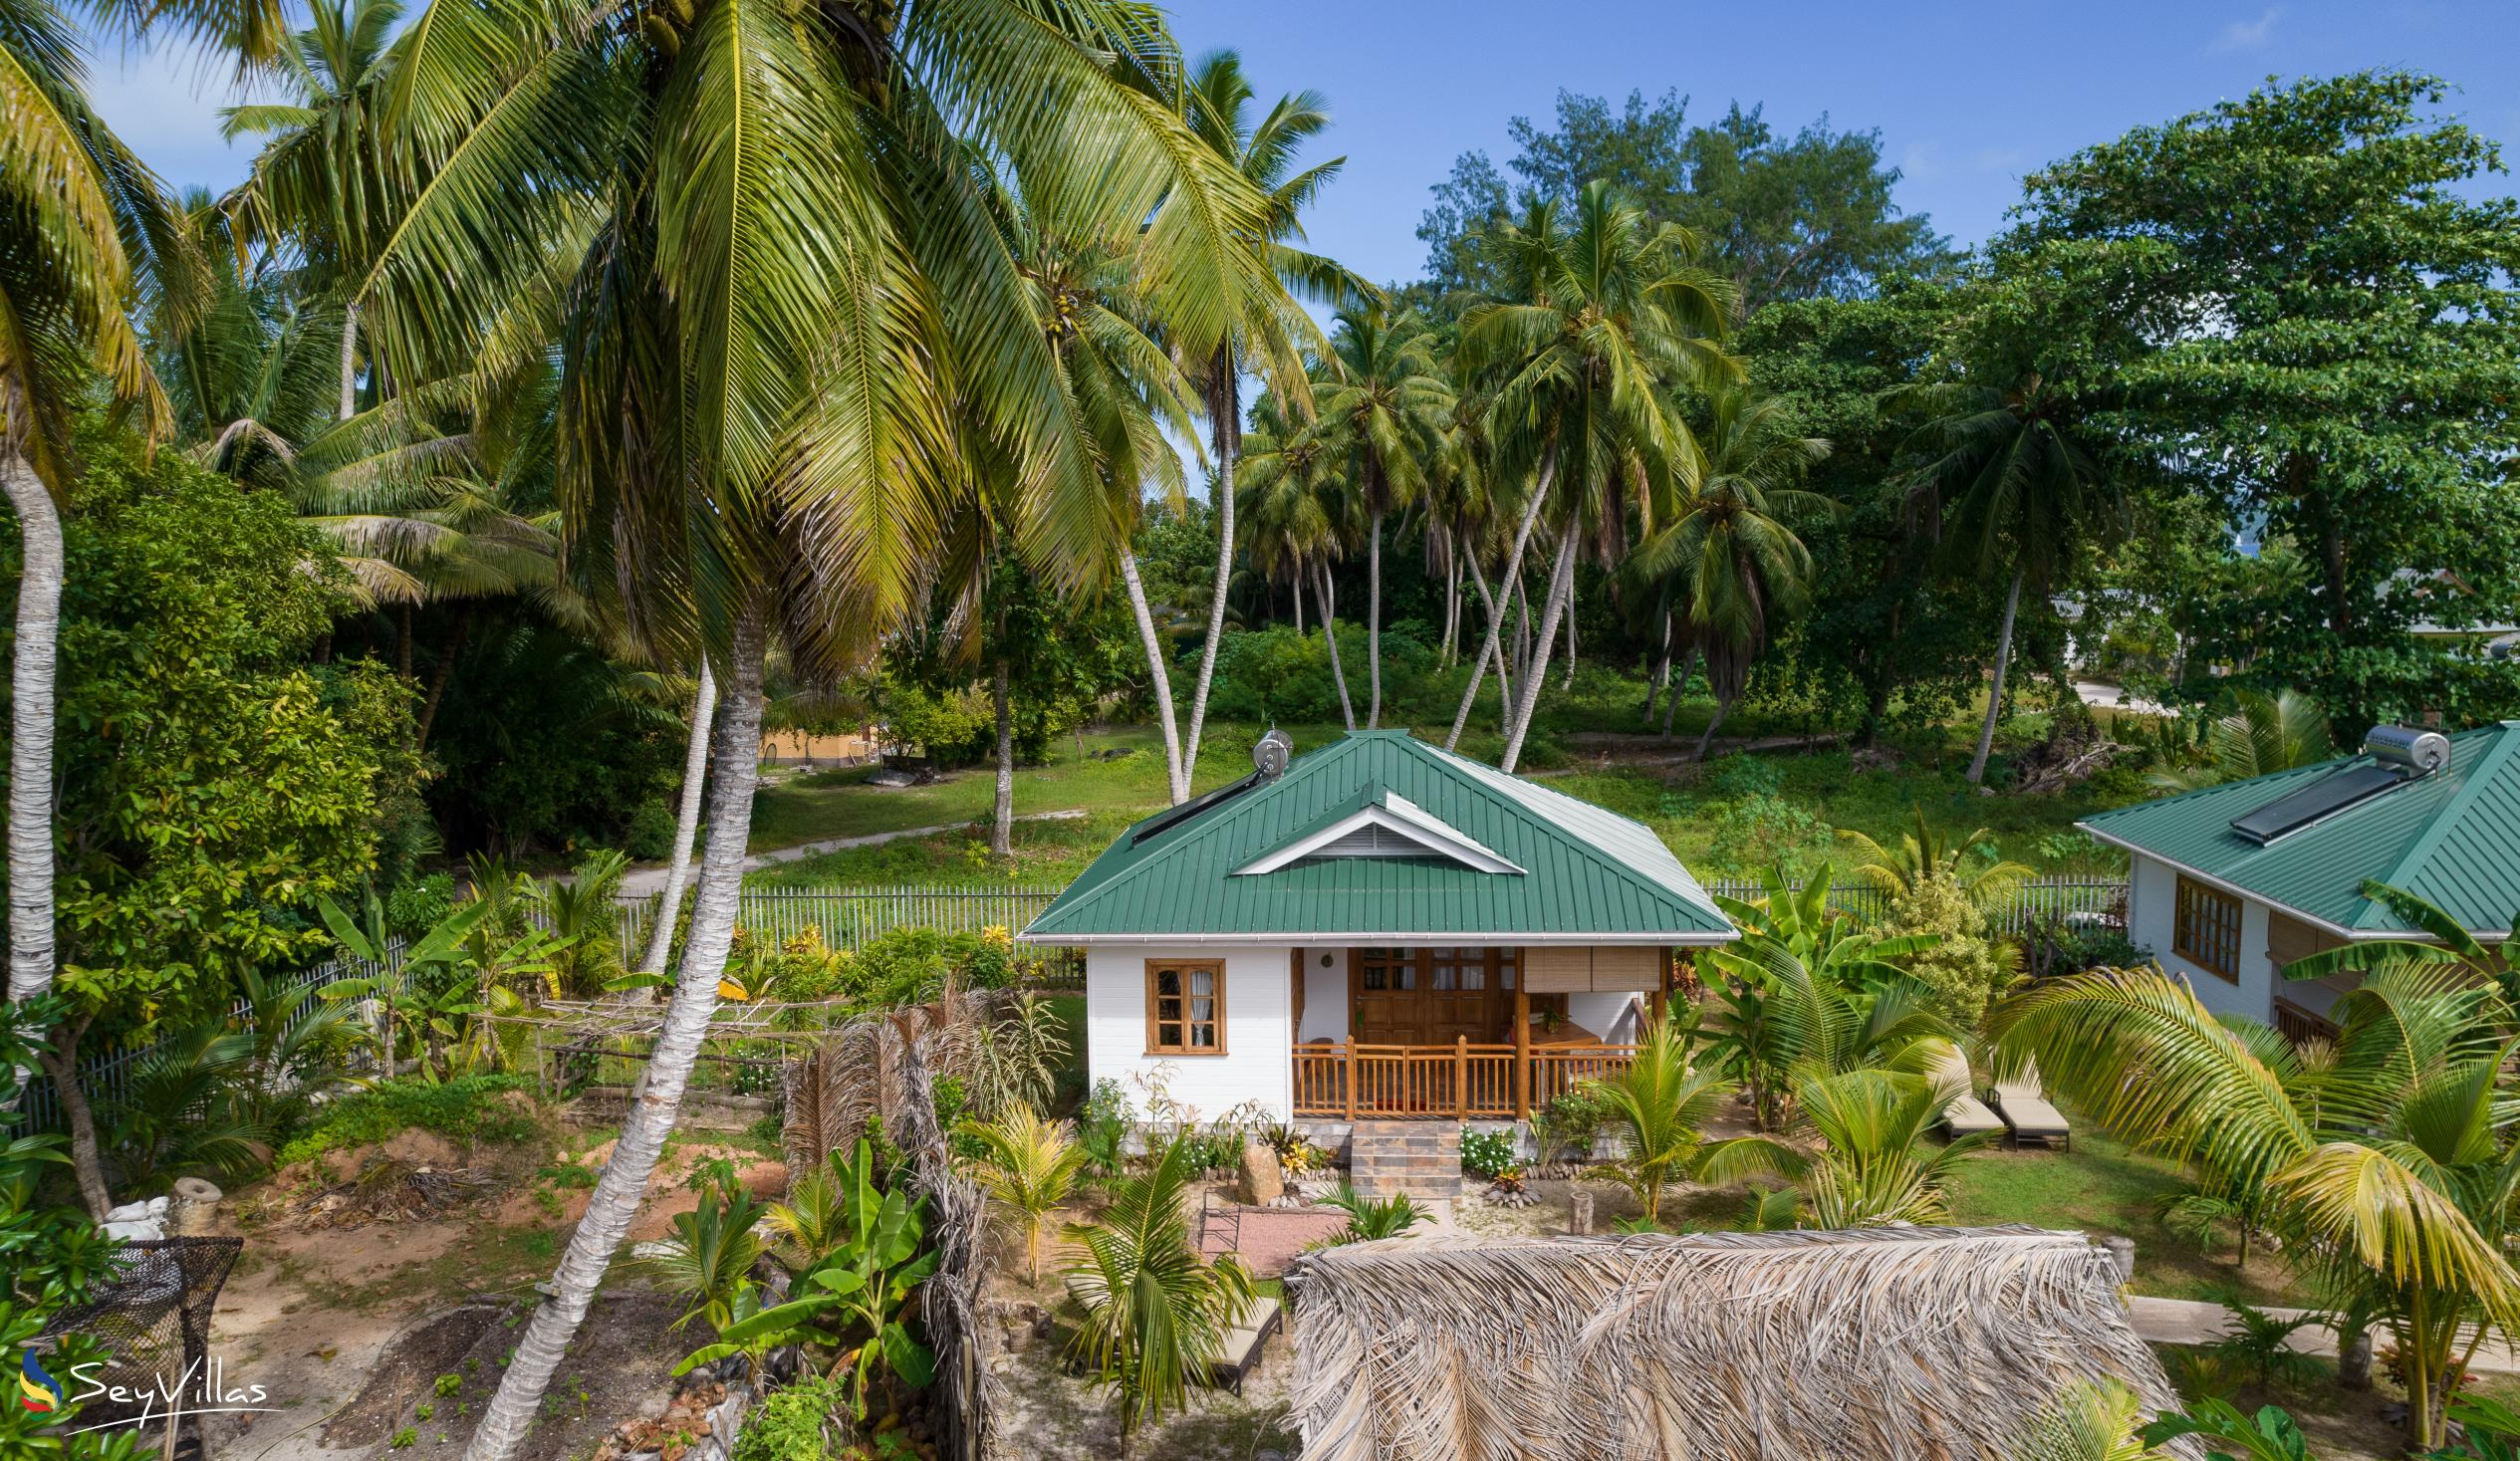 Photo 4: Coco de Mahi - Outdoor area - La Digue (Seychelles)